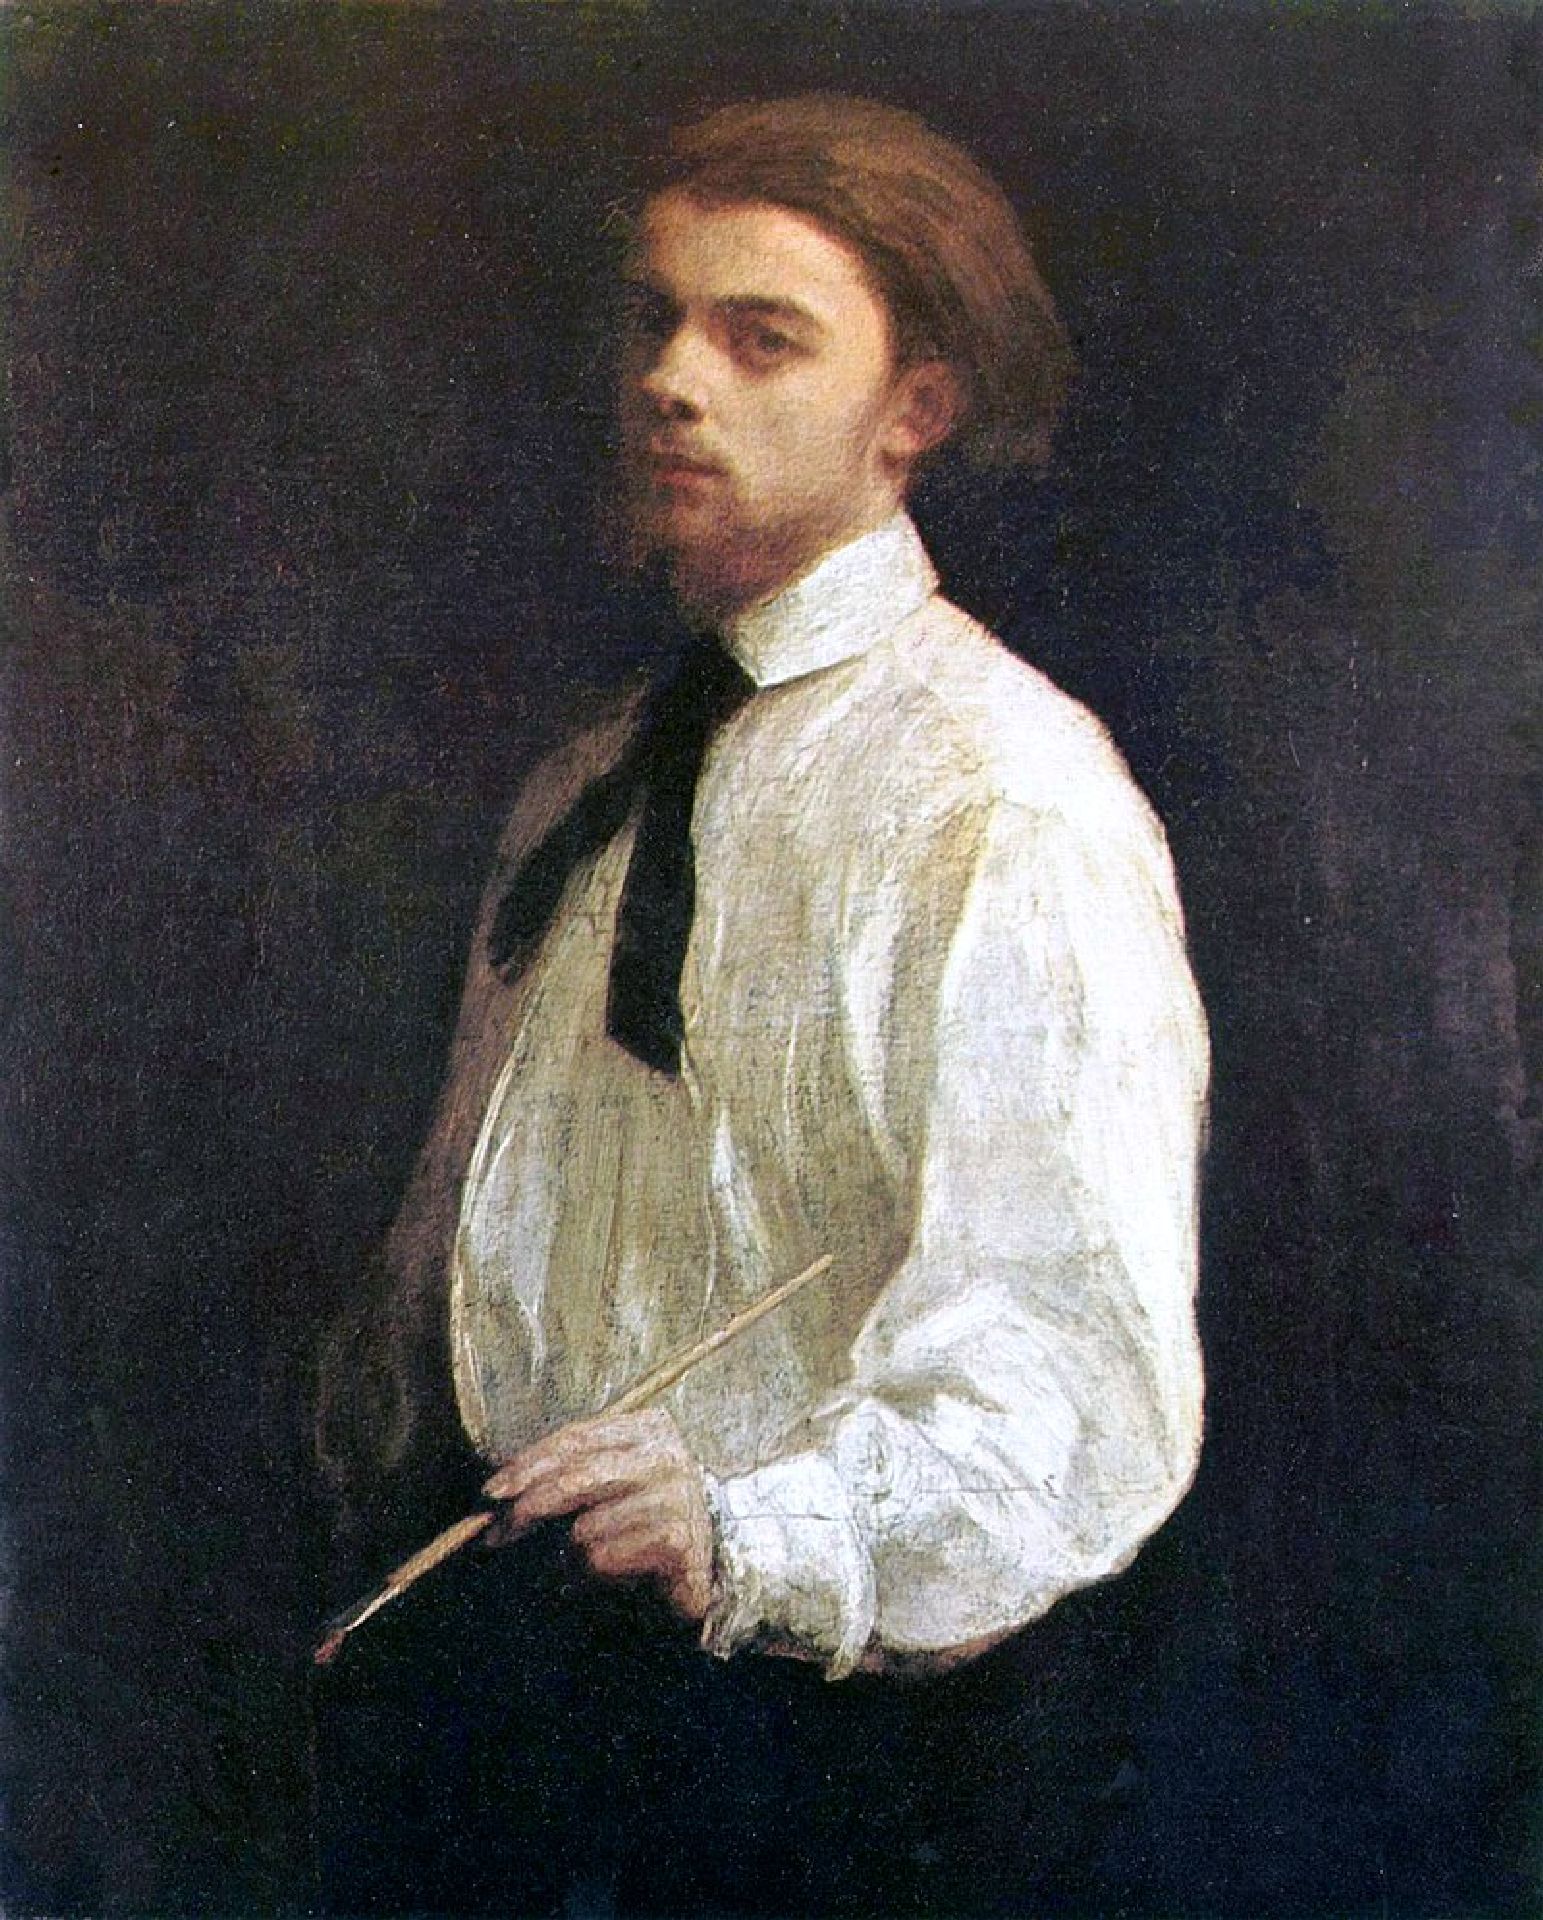 Porträt von Künstler und Maler Ignace 'Henri' Jean Théodore Fantin-Latour